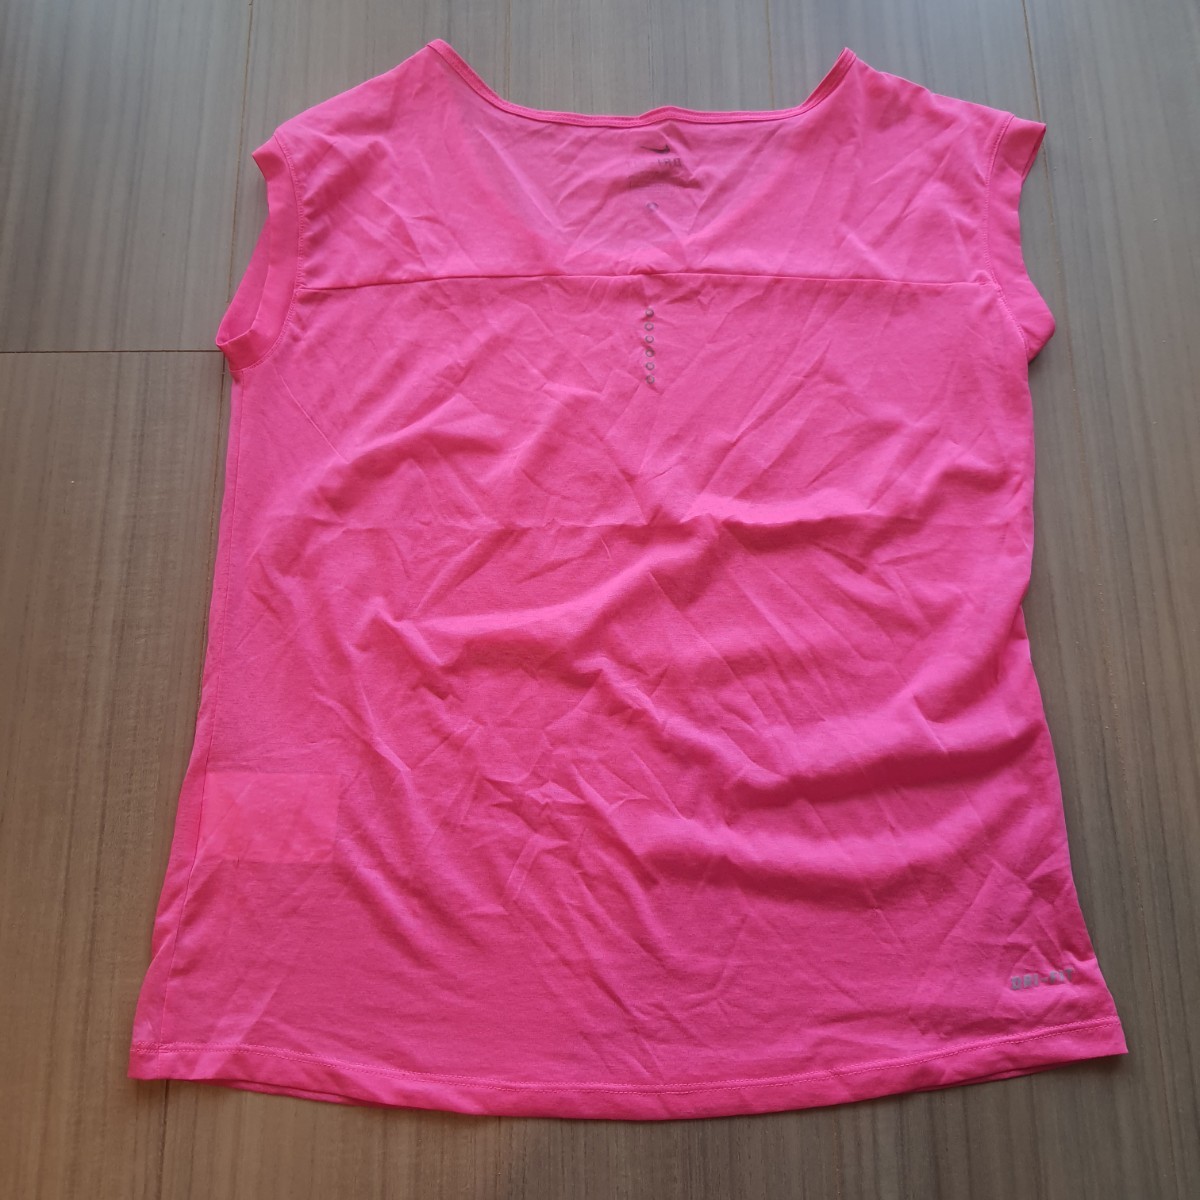 ナイキ NIKE 半袖 Tシャツ レディース ピンク ジム ウェア ランニング スポーツブラ トップス ヨガ フィットネス